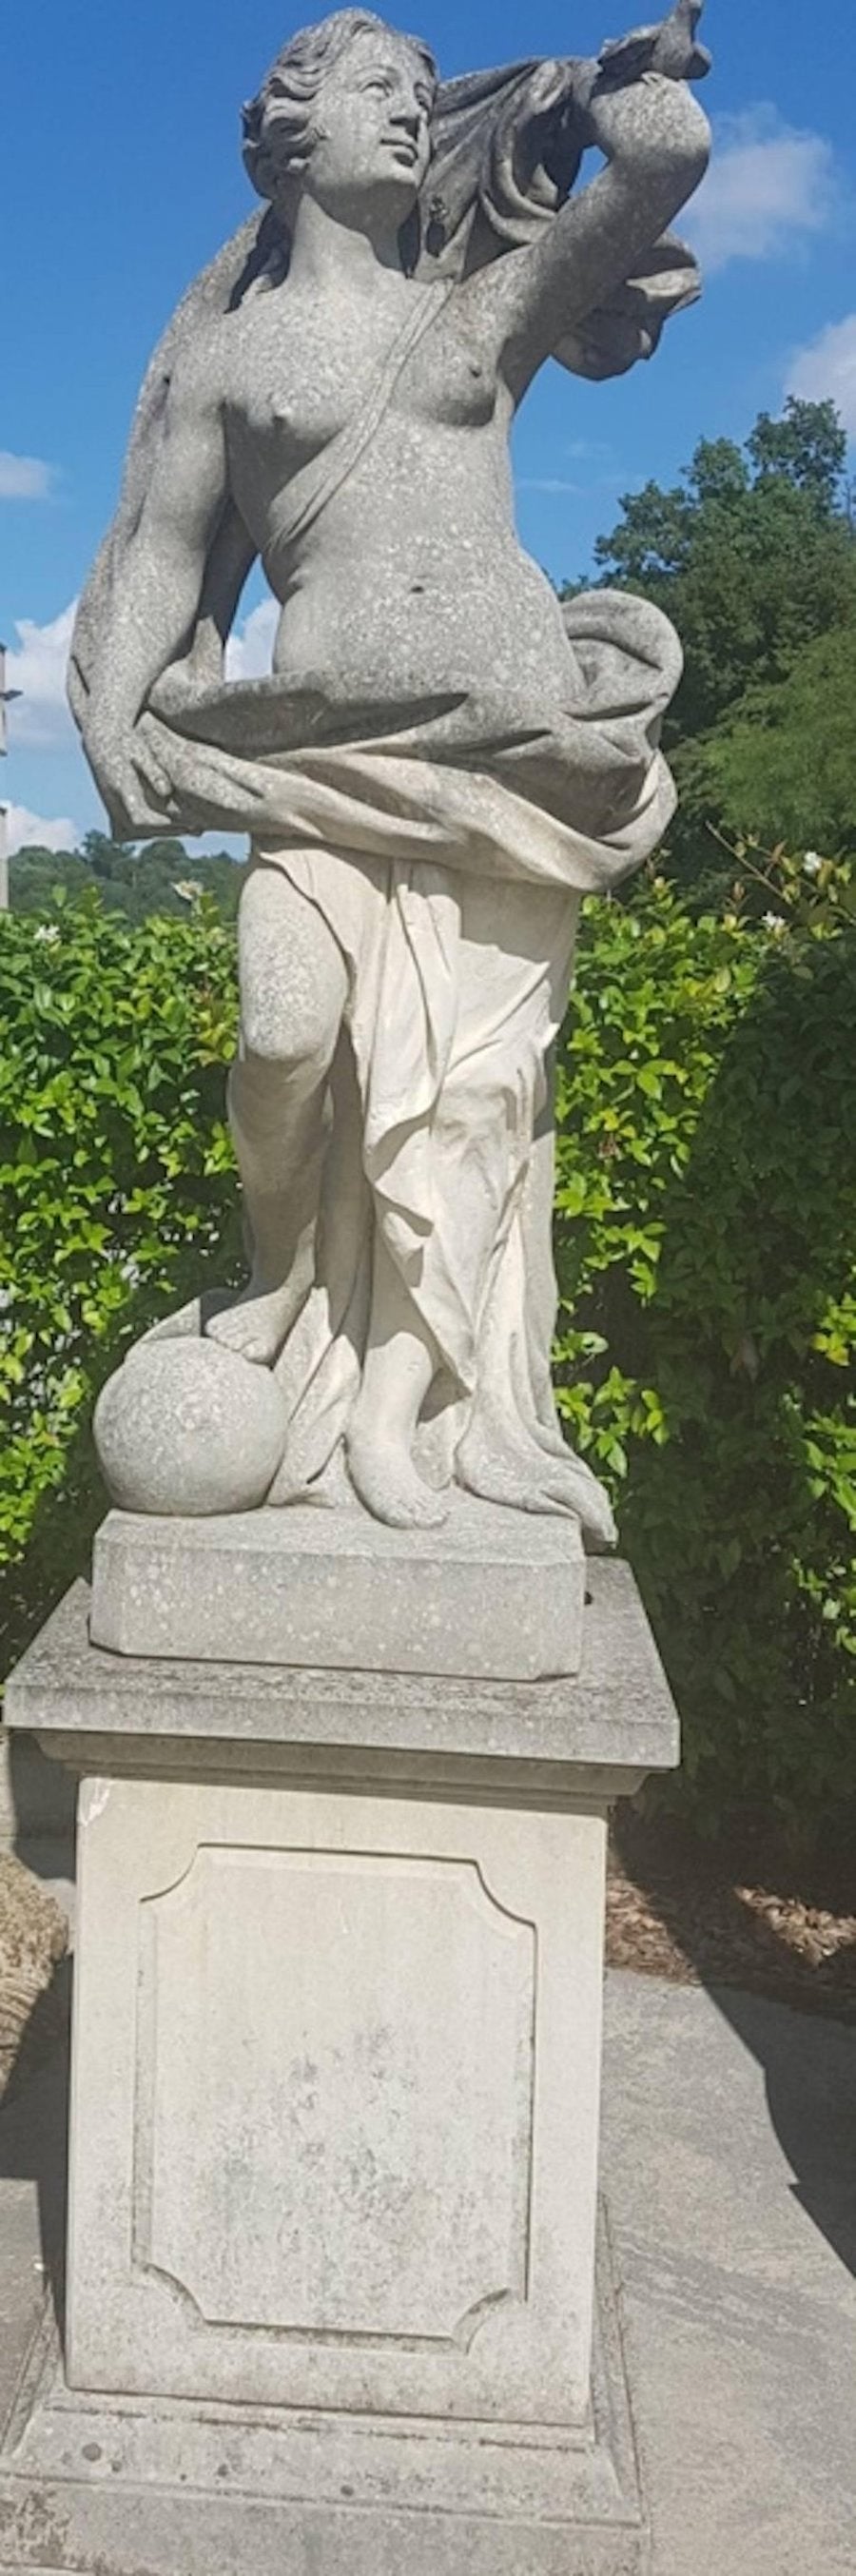 Sculpture de jardin italienne du sujet mythologique romain Aria